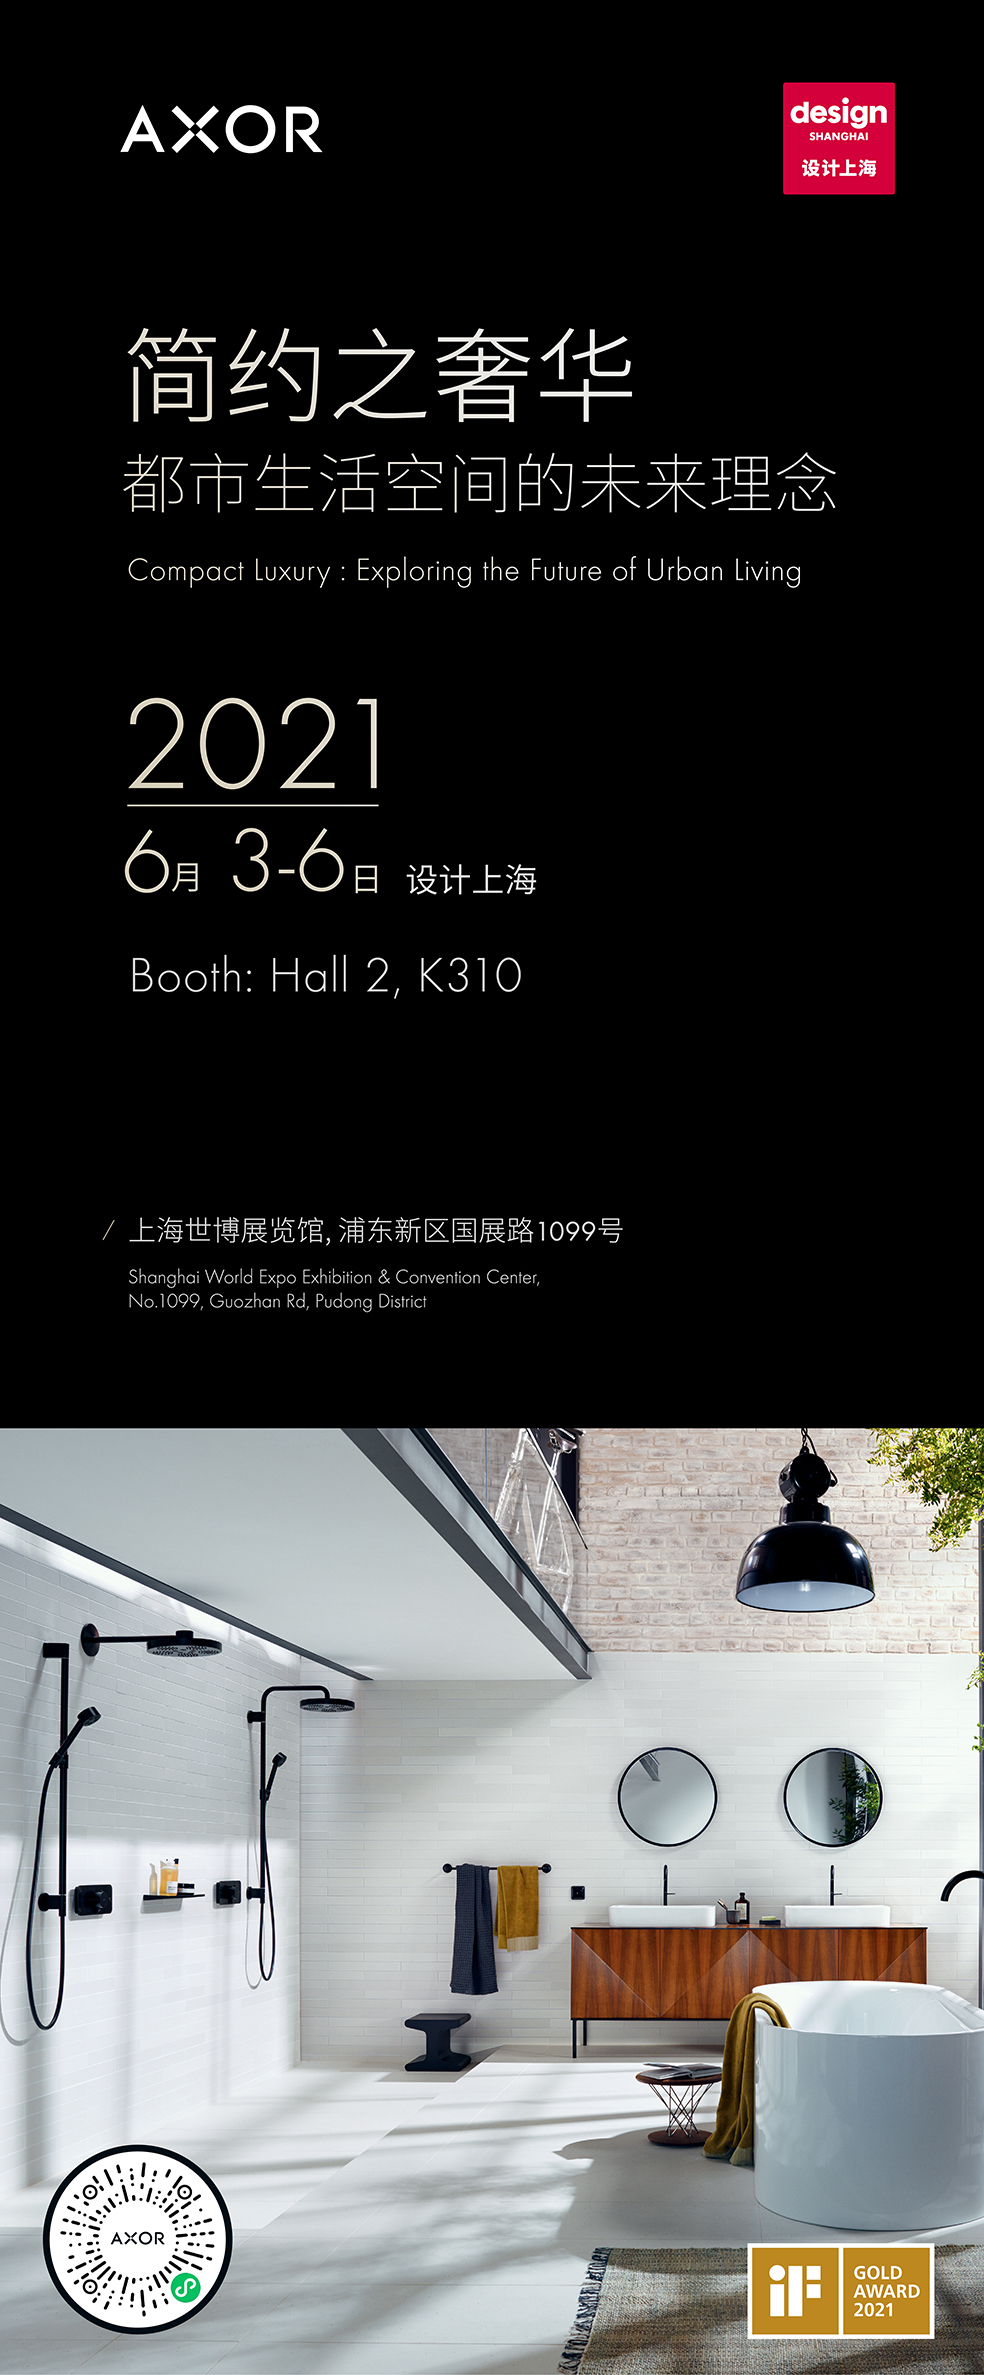 01 设计上海2021即将开展，AXOR雅生演绎简约奢华新风.jpg